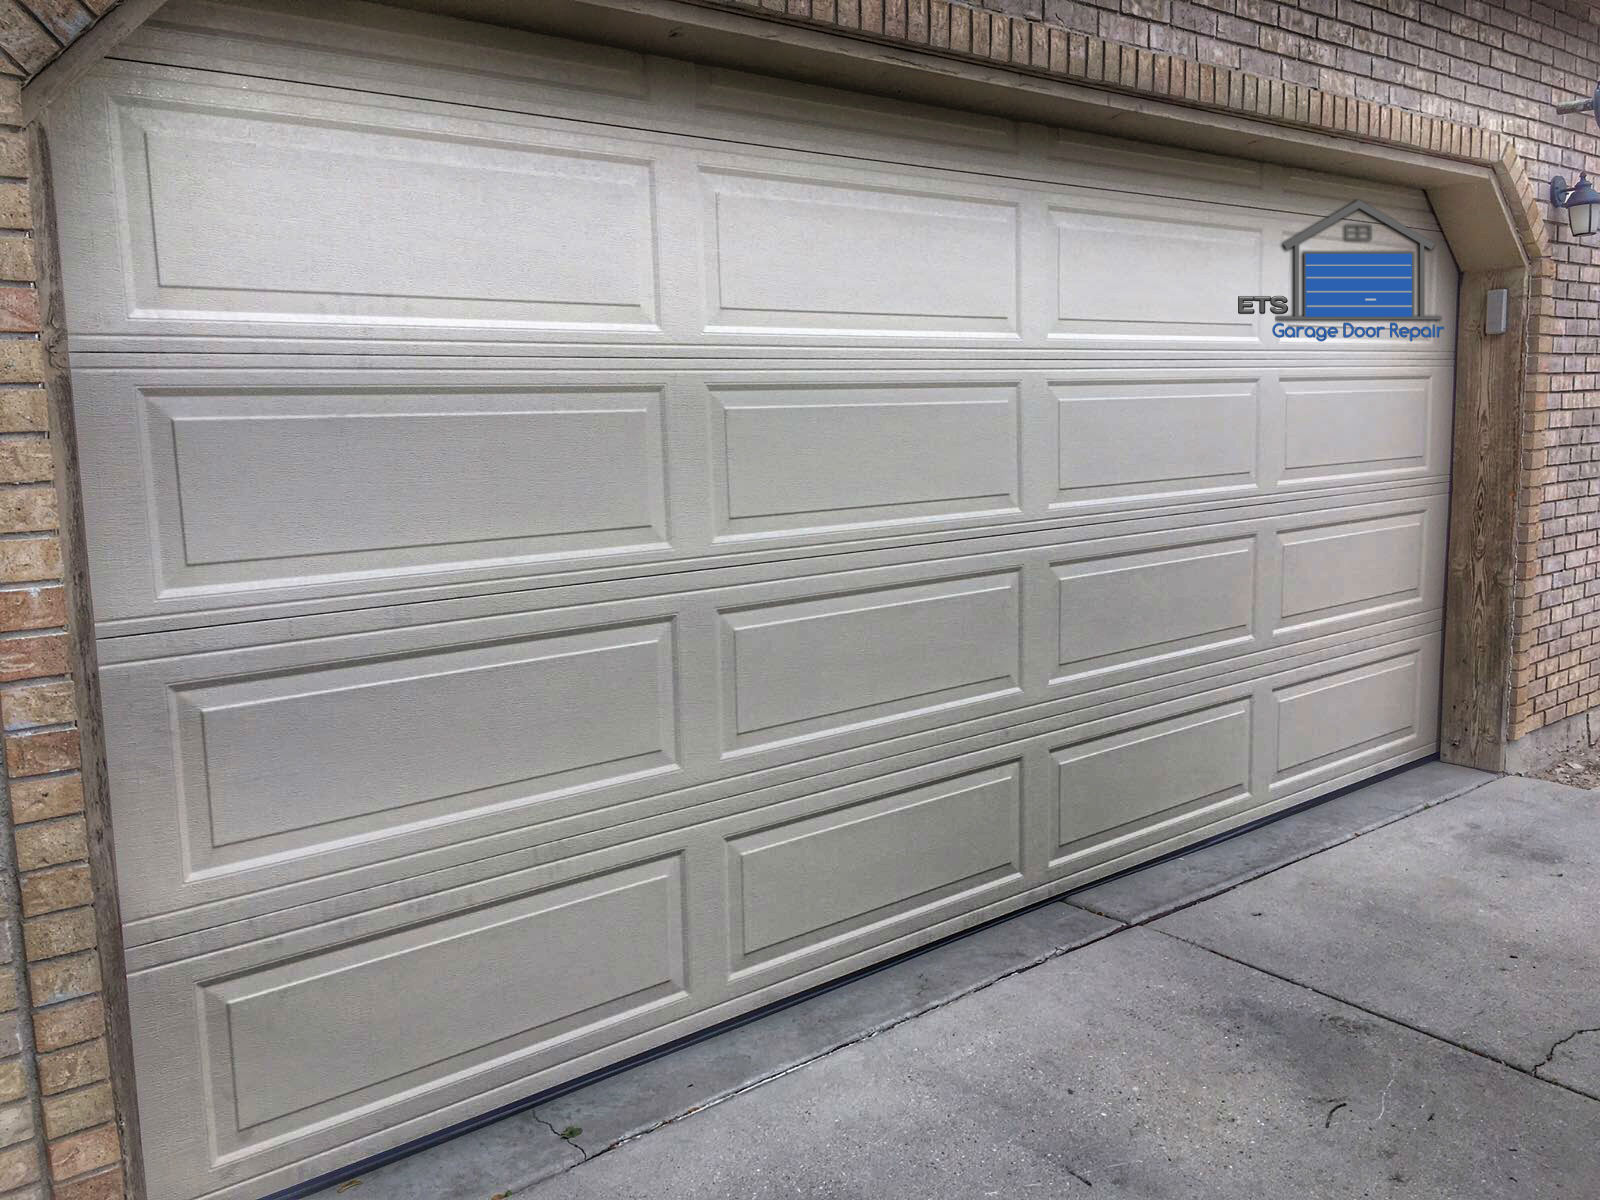 ETS Garage Door Repair Of Hillsboro - Garage Door Repair & Installation Services3